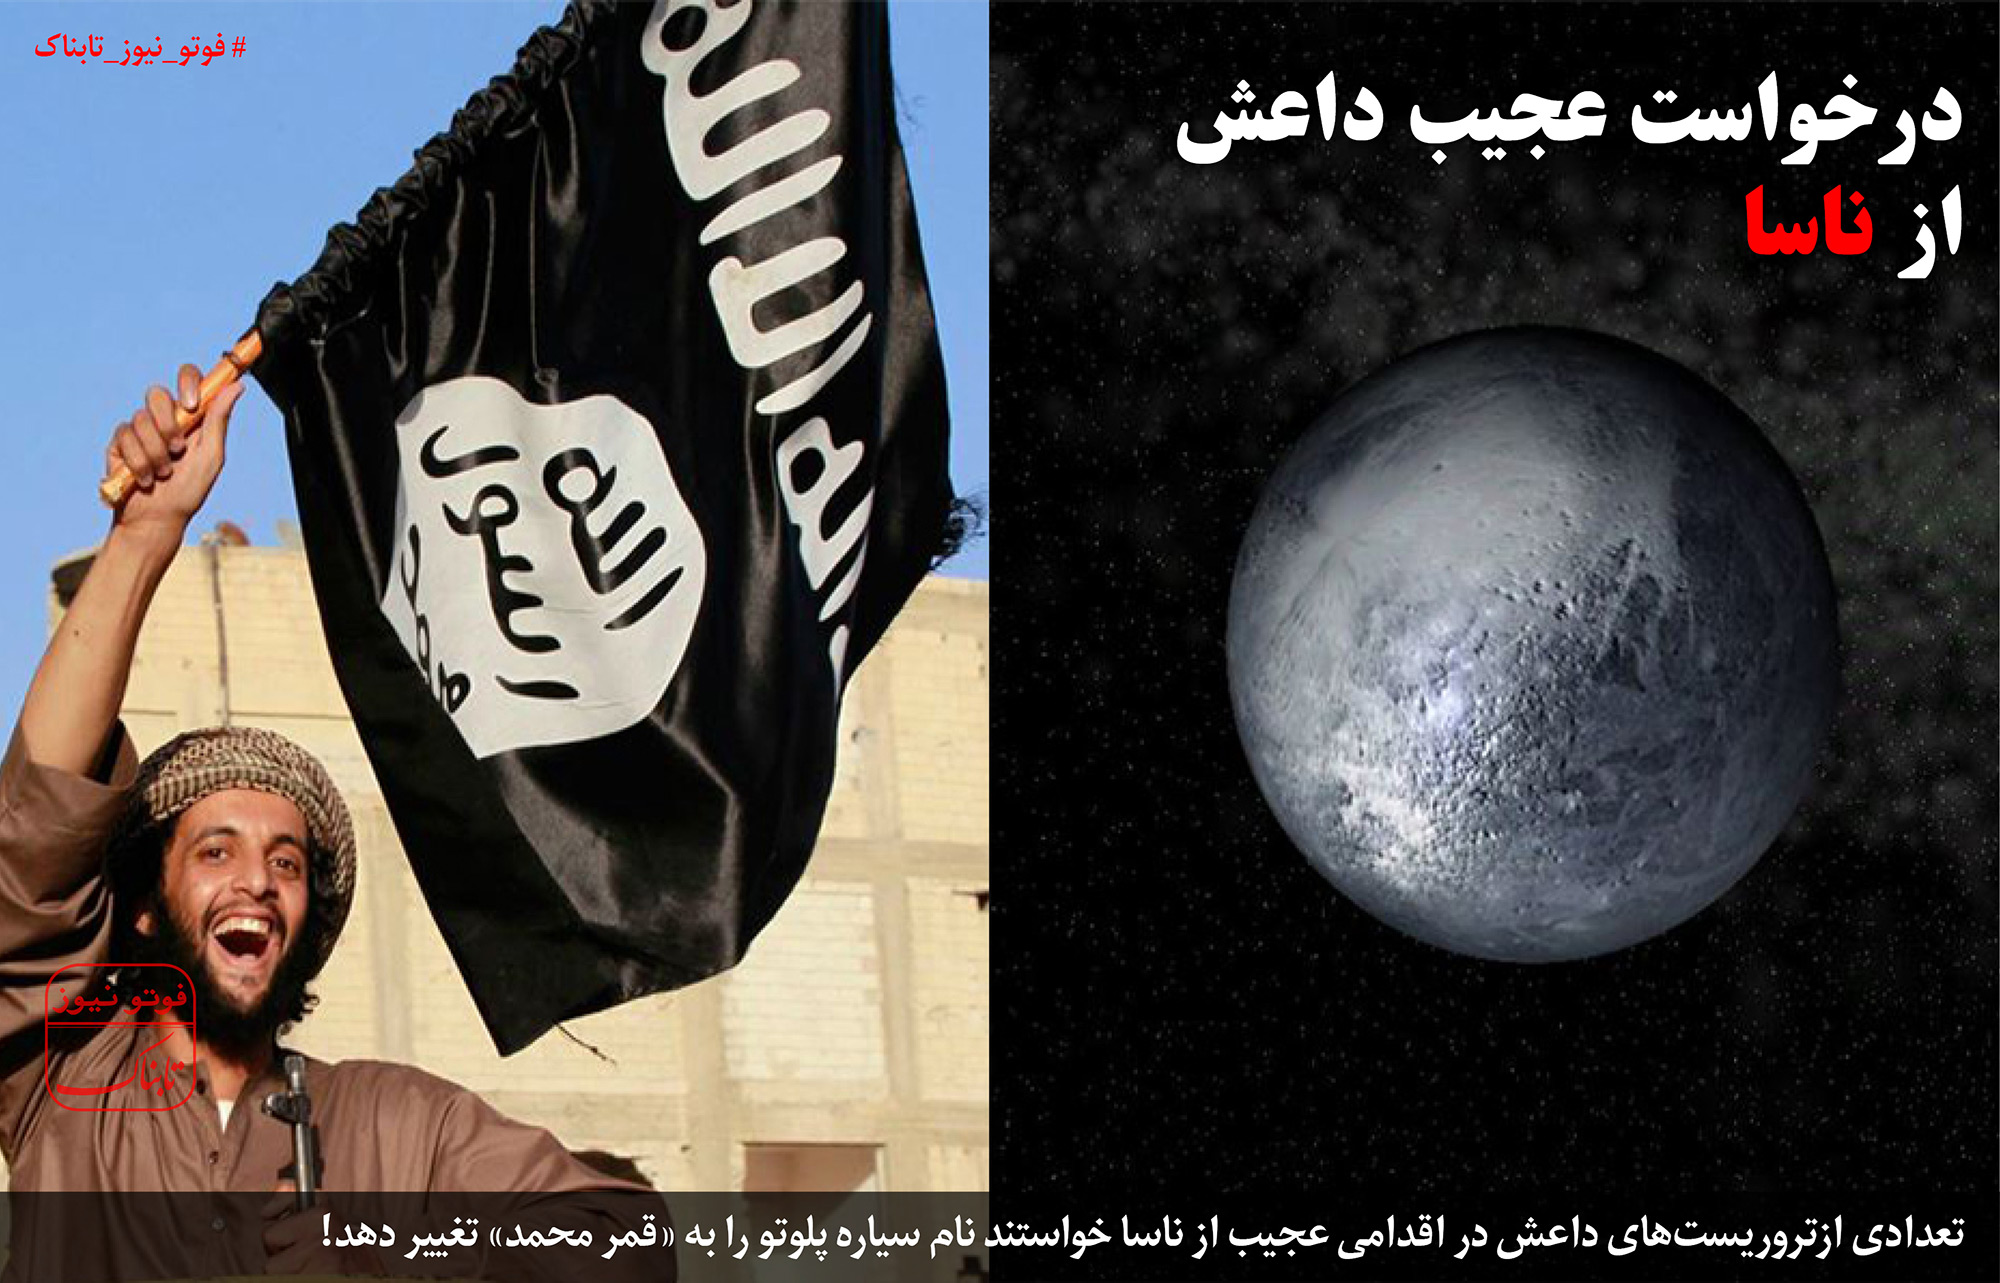 درخواست عجیب داعش از آژانس فضایی آمریکا ناسا + عکس